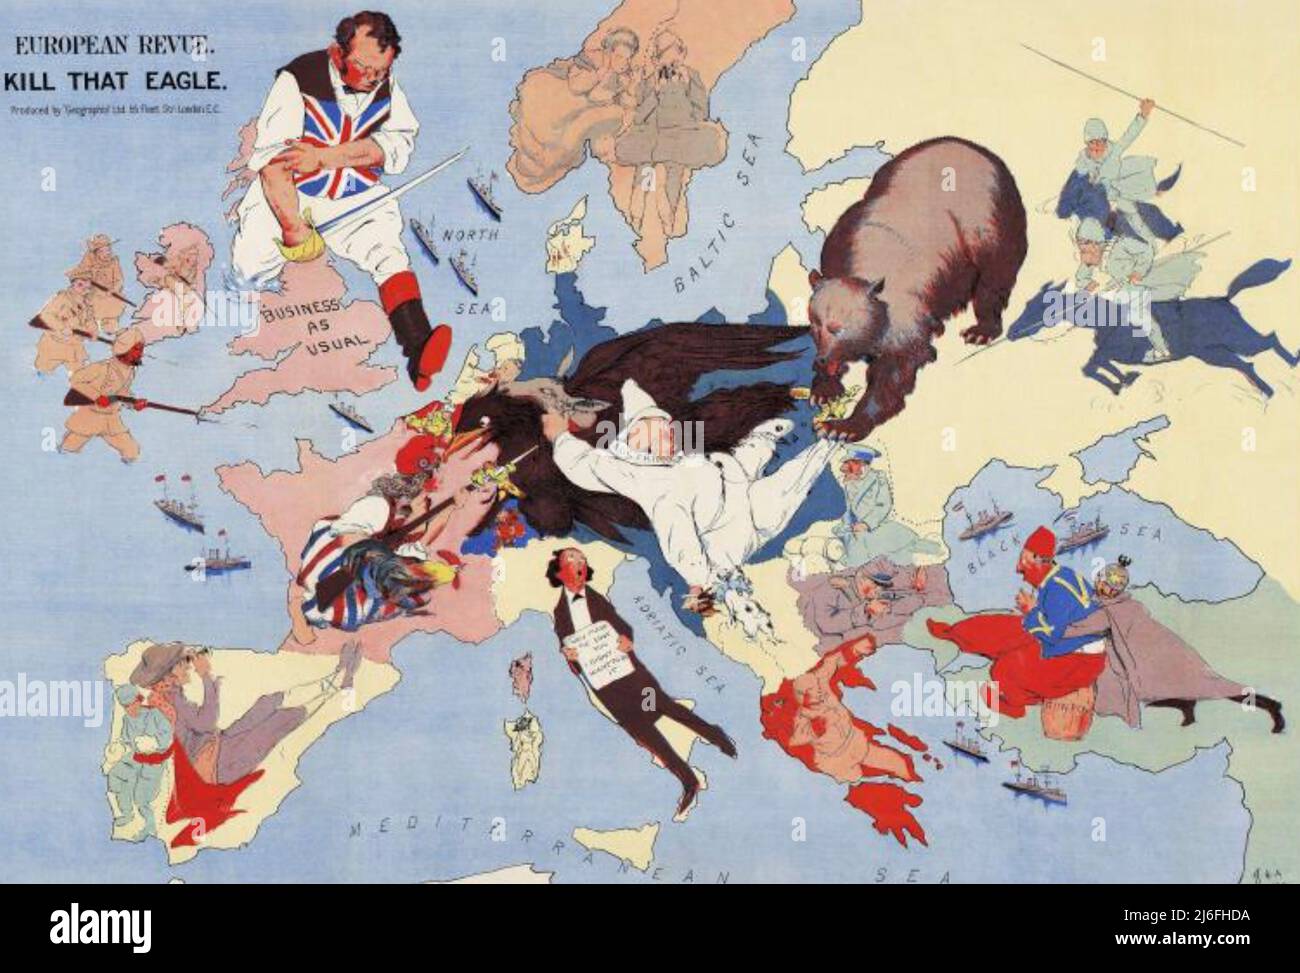 KILL THAT EAGLE Ein satirischer Cartoon aus dem europäischen Revue-Magazin von 1914 Stockfoto